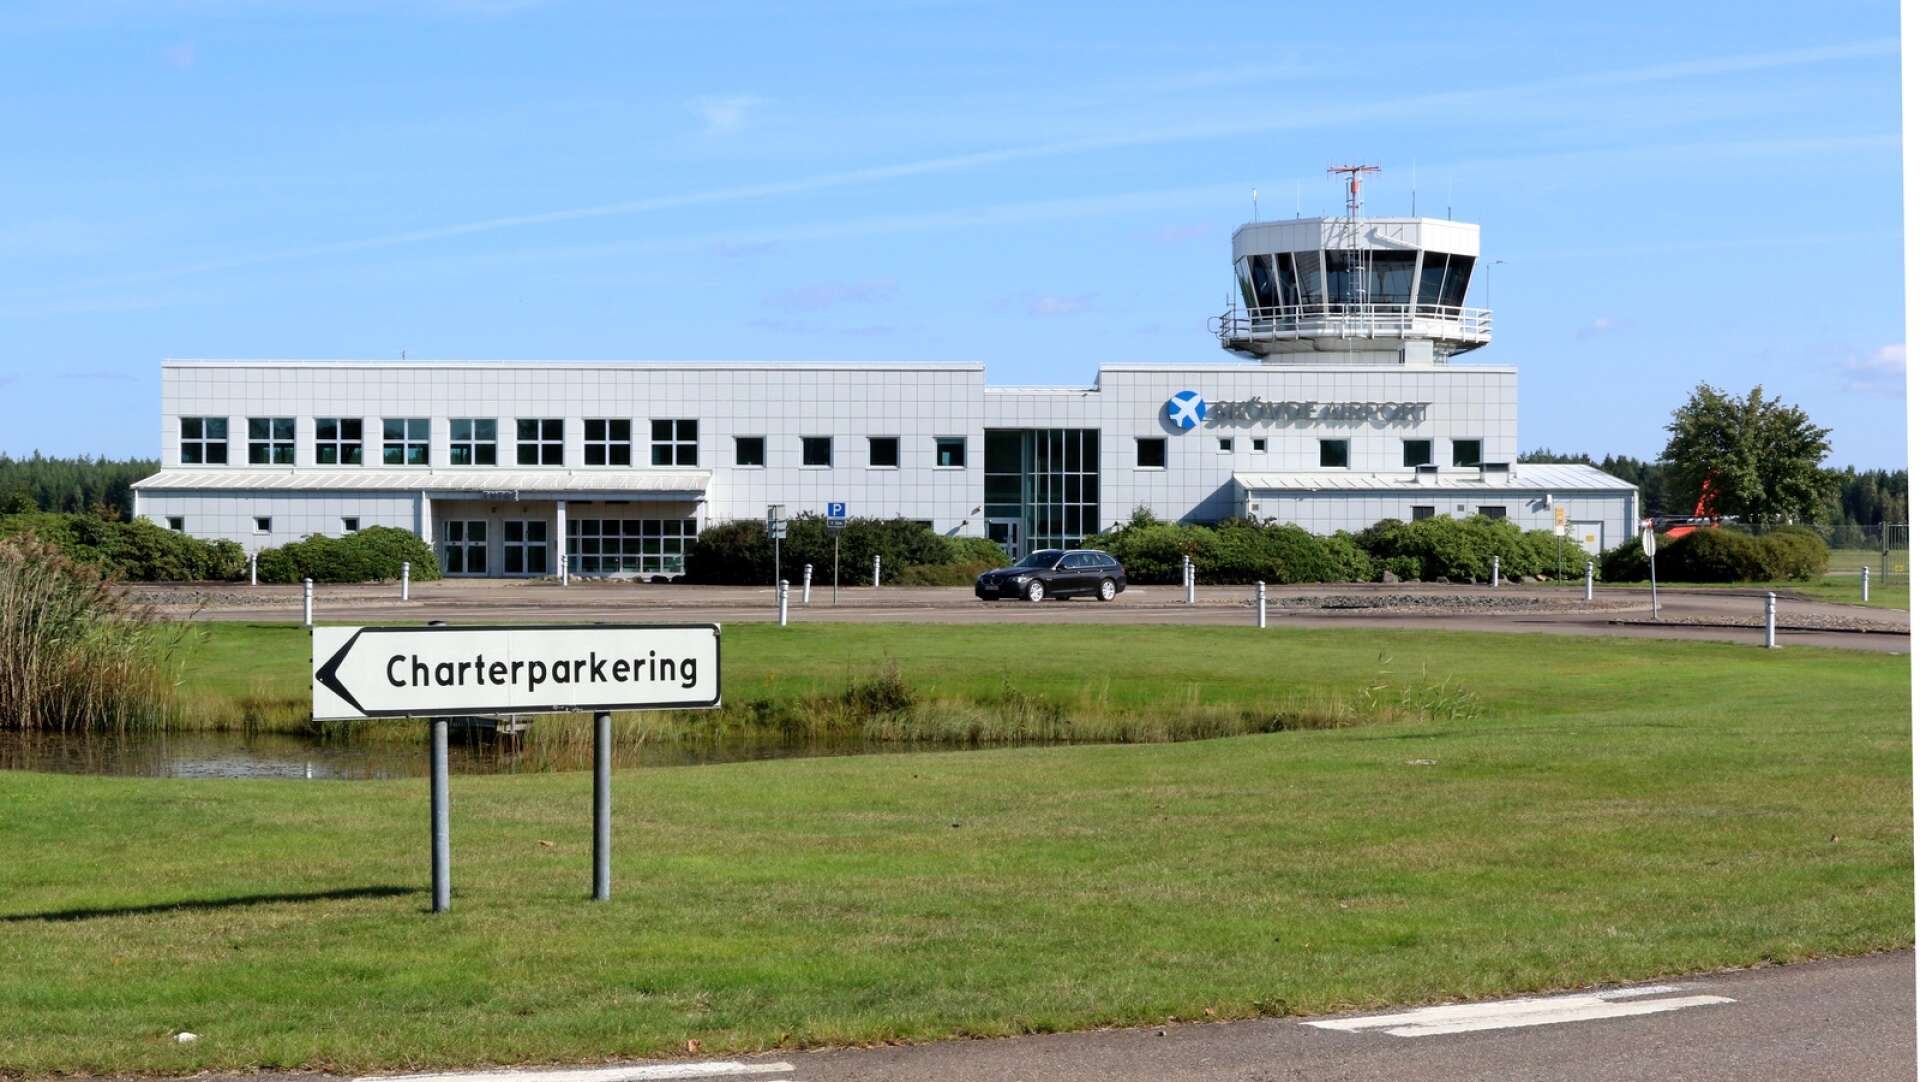 ”Som vi förmedlat i upprepade insändarsvar så kvarstår intresse från flera stora bolag” säger Theres Sahlström (M) angående frågor om etablering på nedlagda flygplatsen.